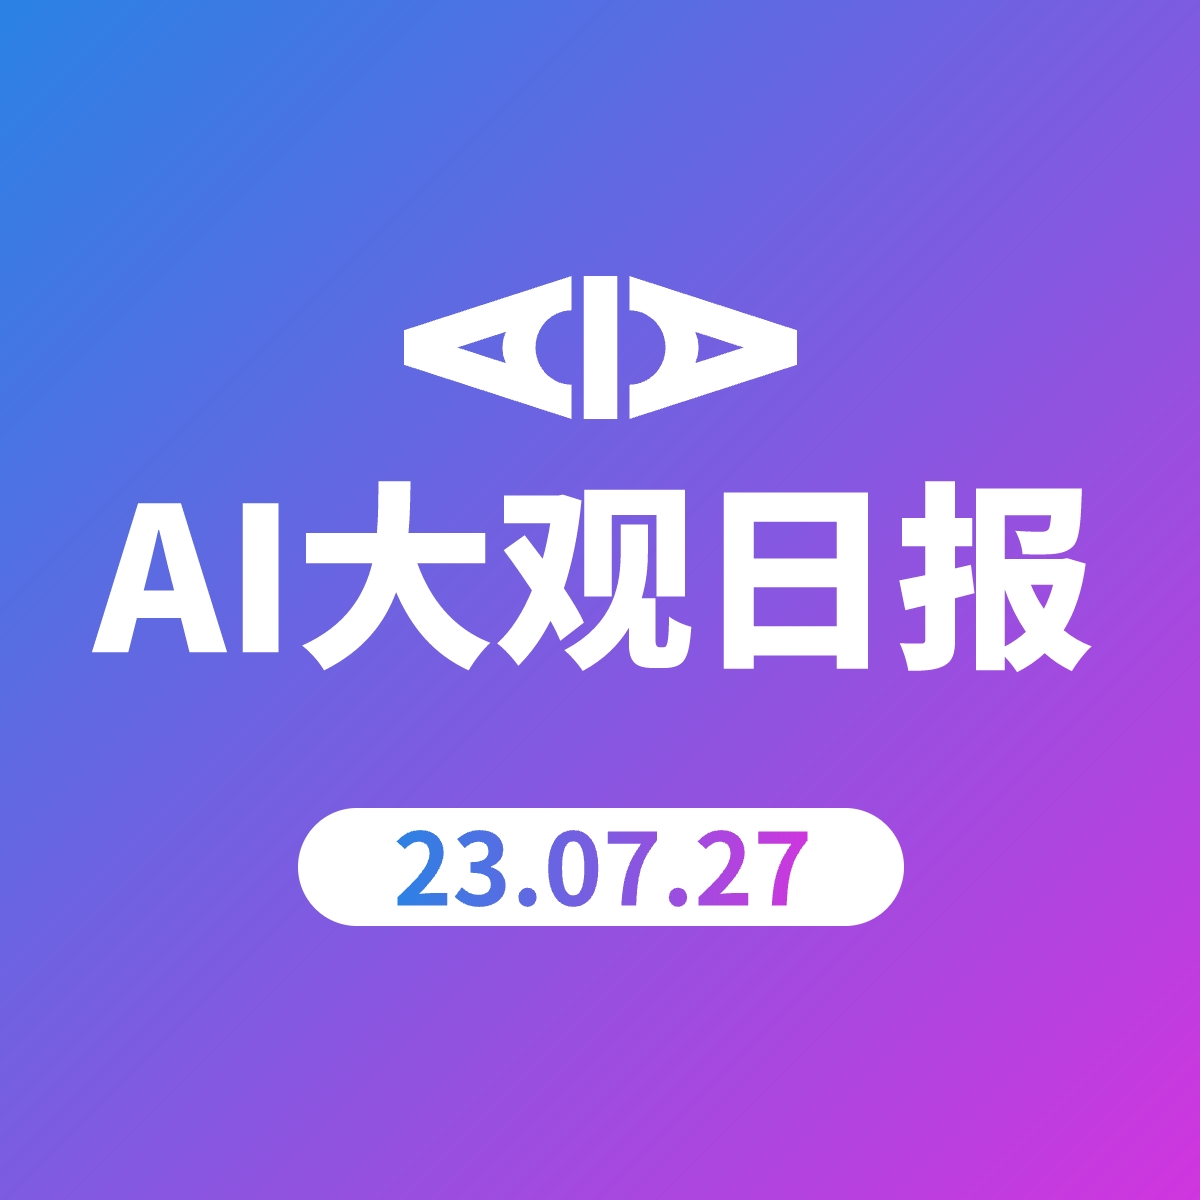 AI大观日报 | 23.07.27